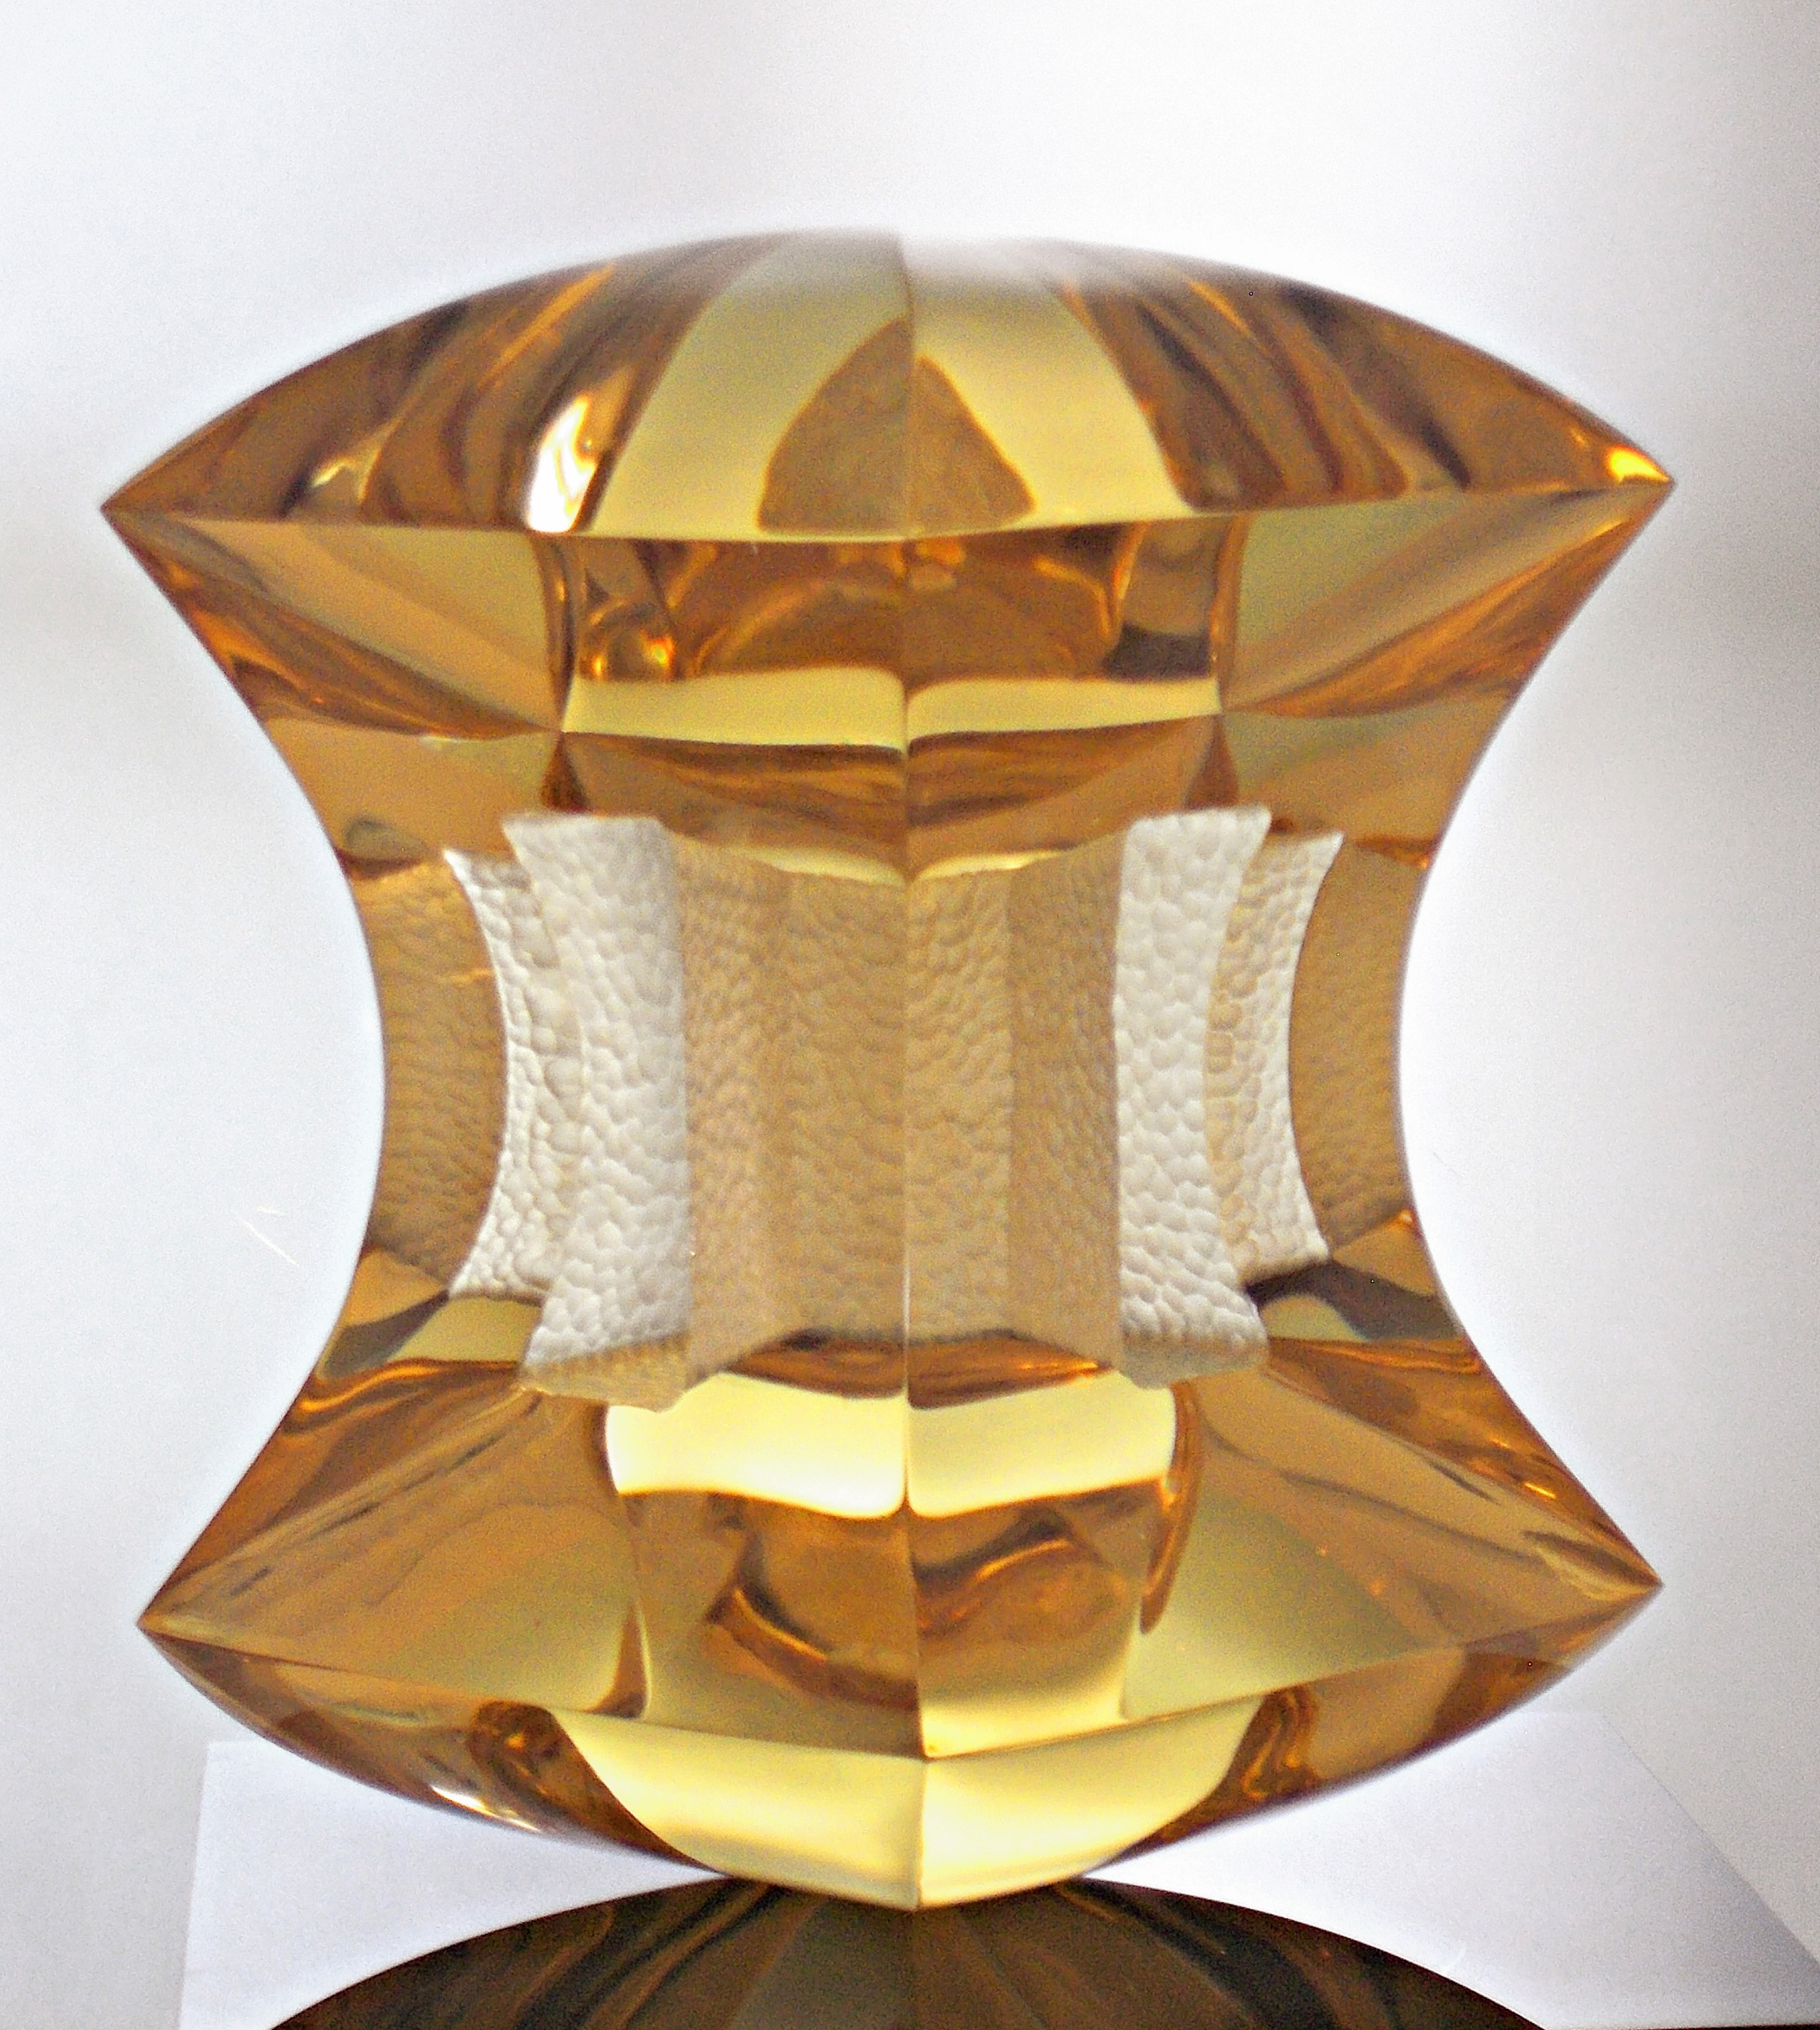 V. Klein - Studio glass, 2015